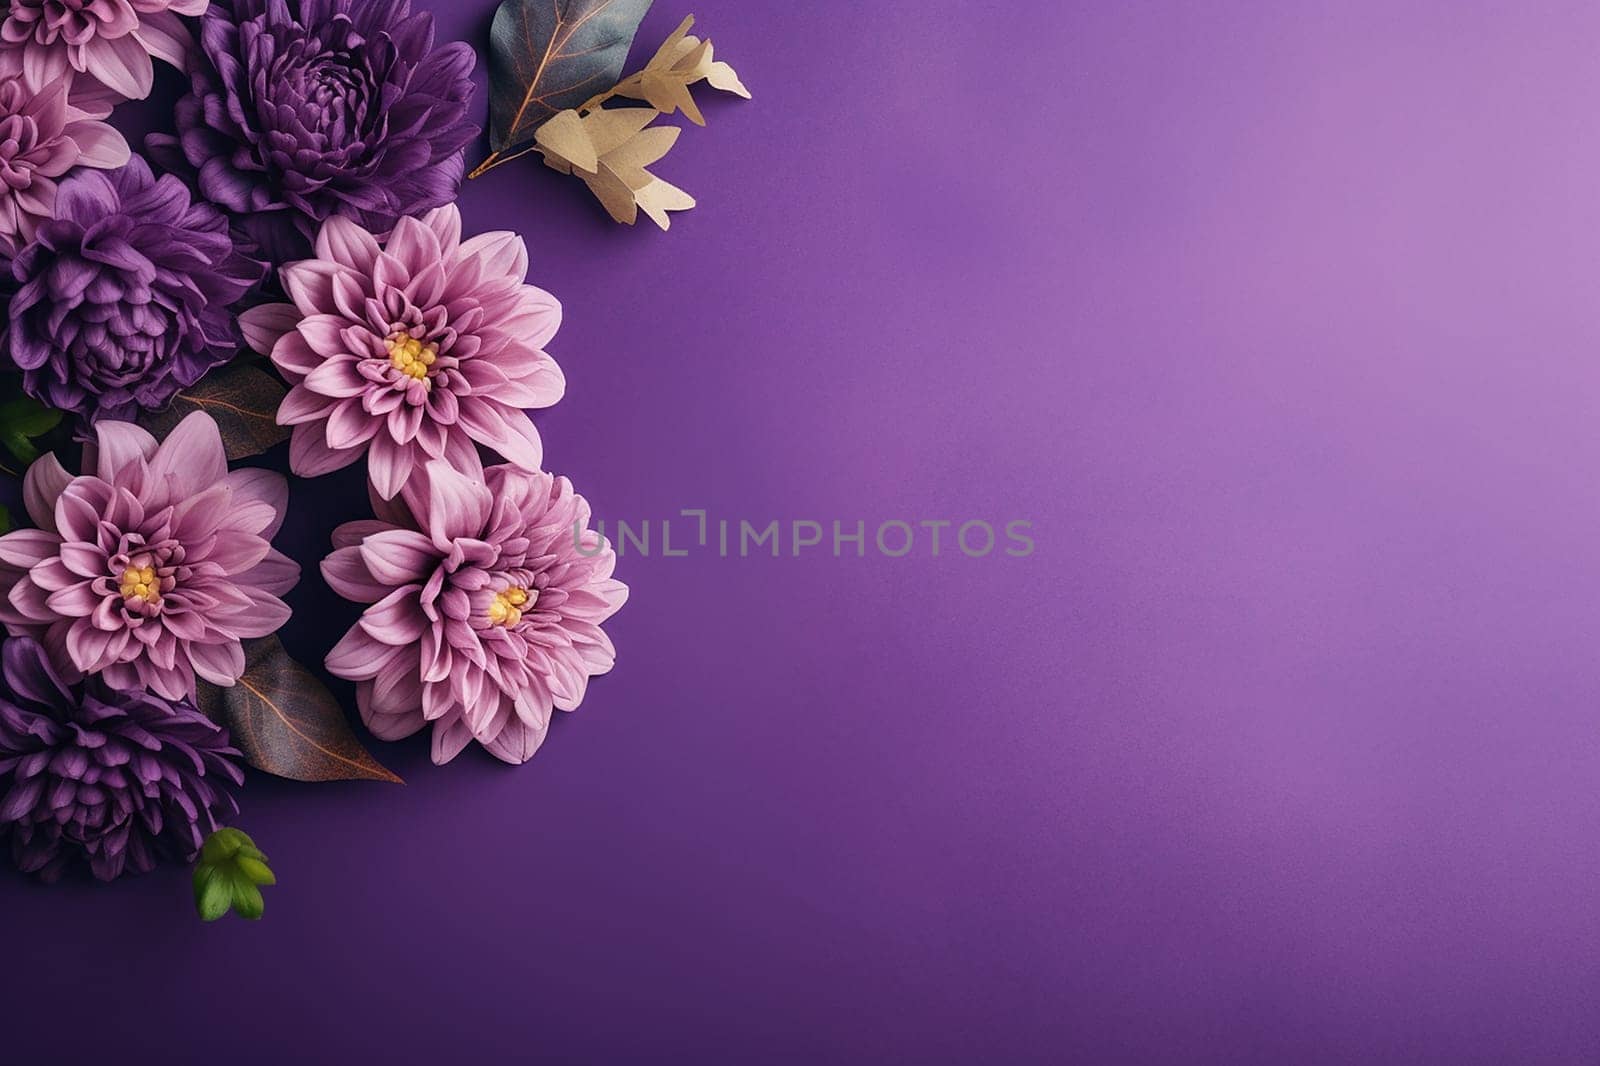 A beautiful arrangement of purple flowers on a purple backdrop. by Hype2art